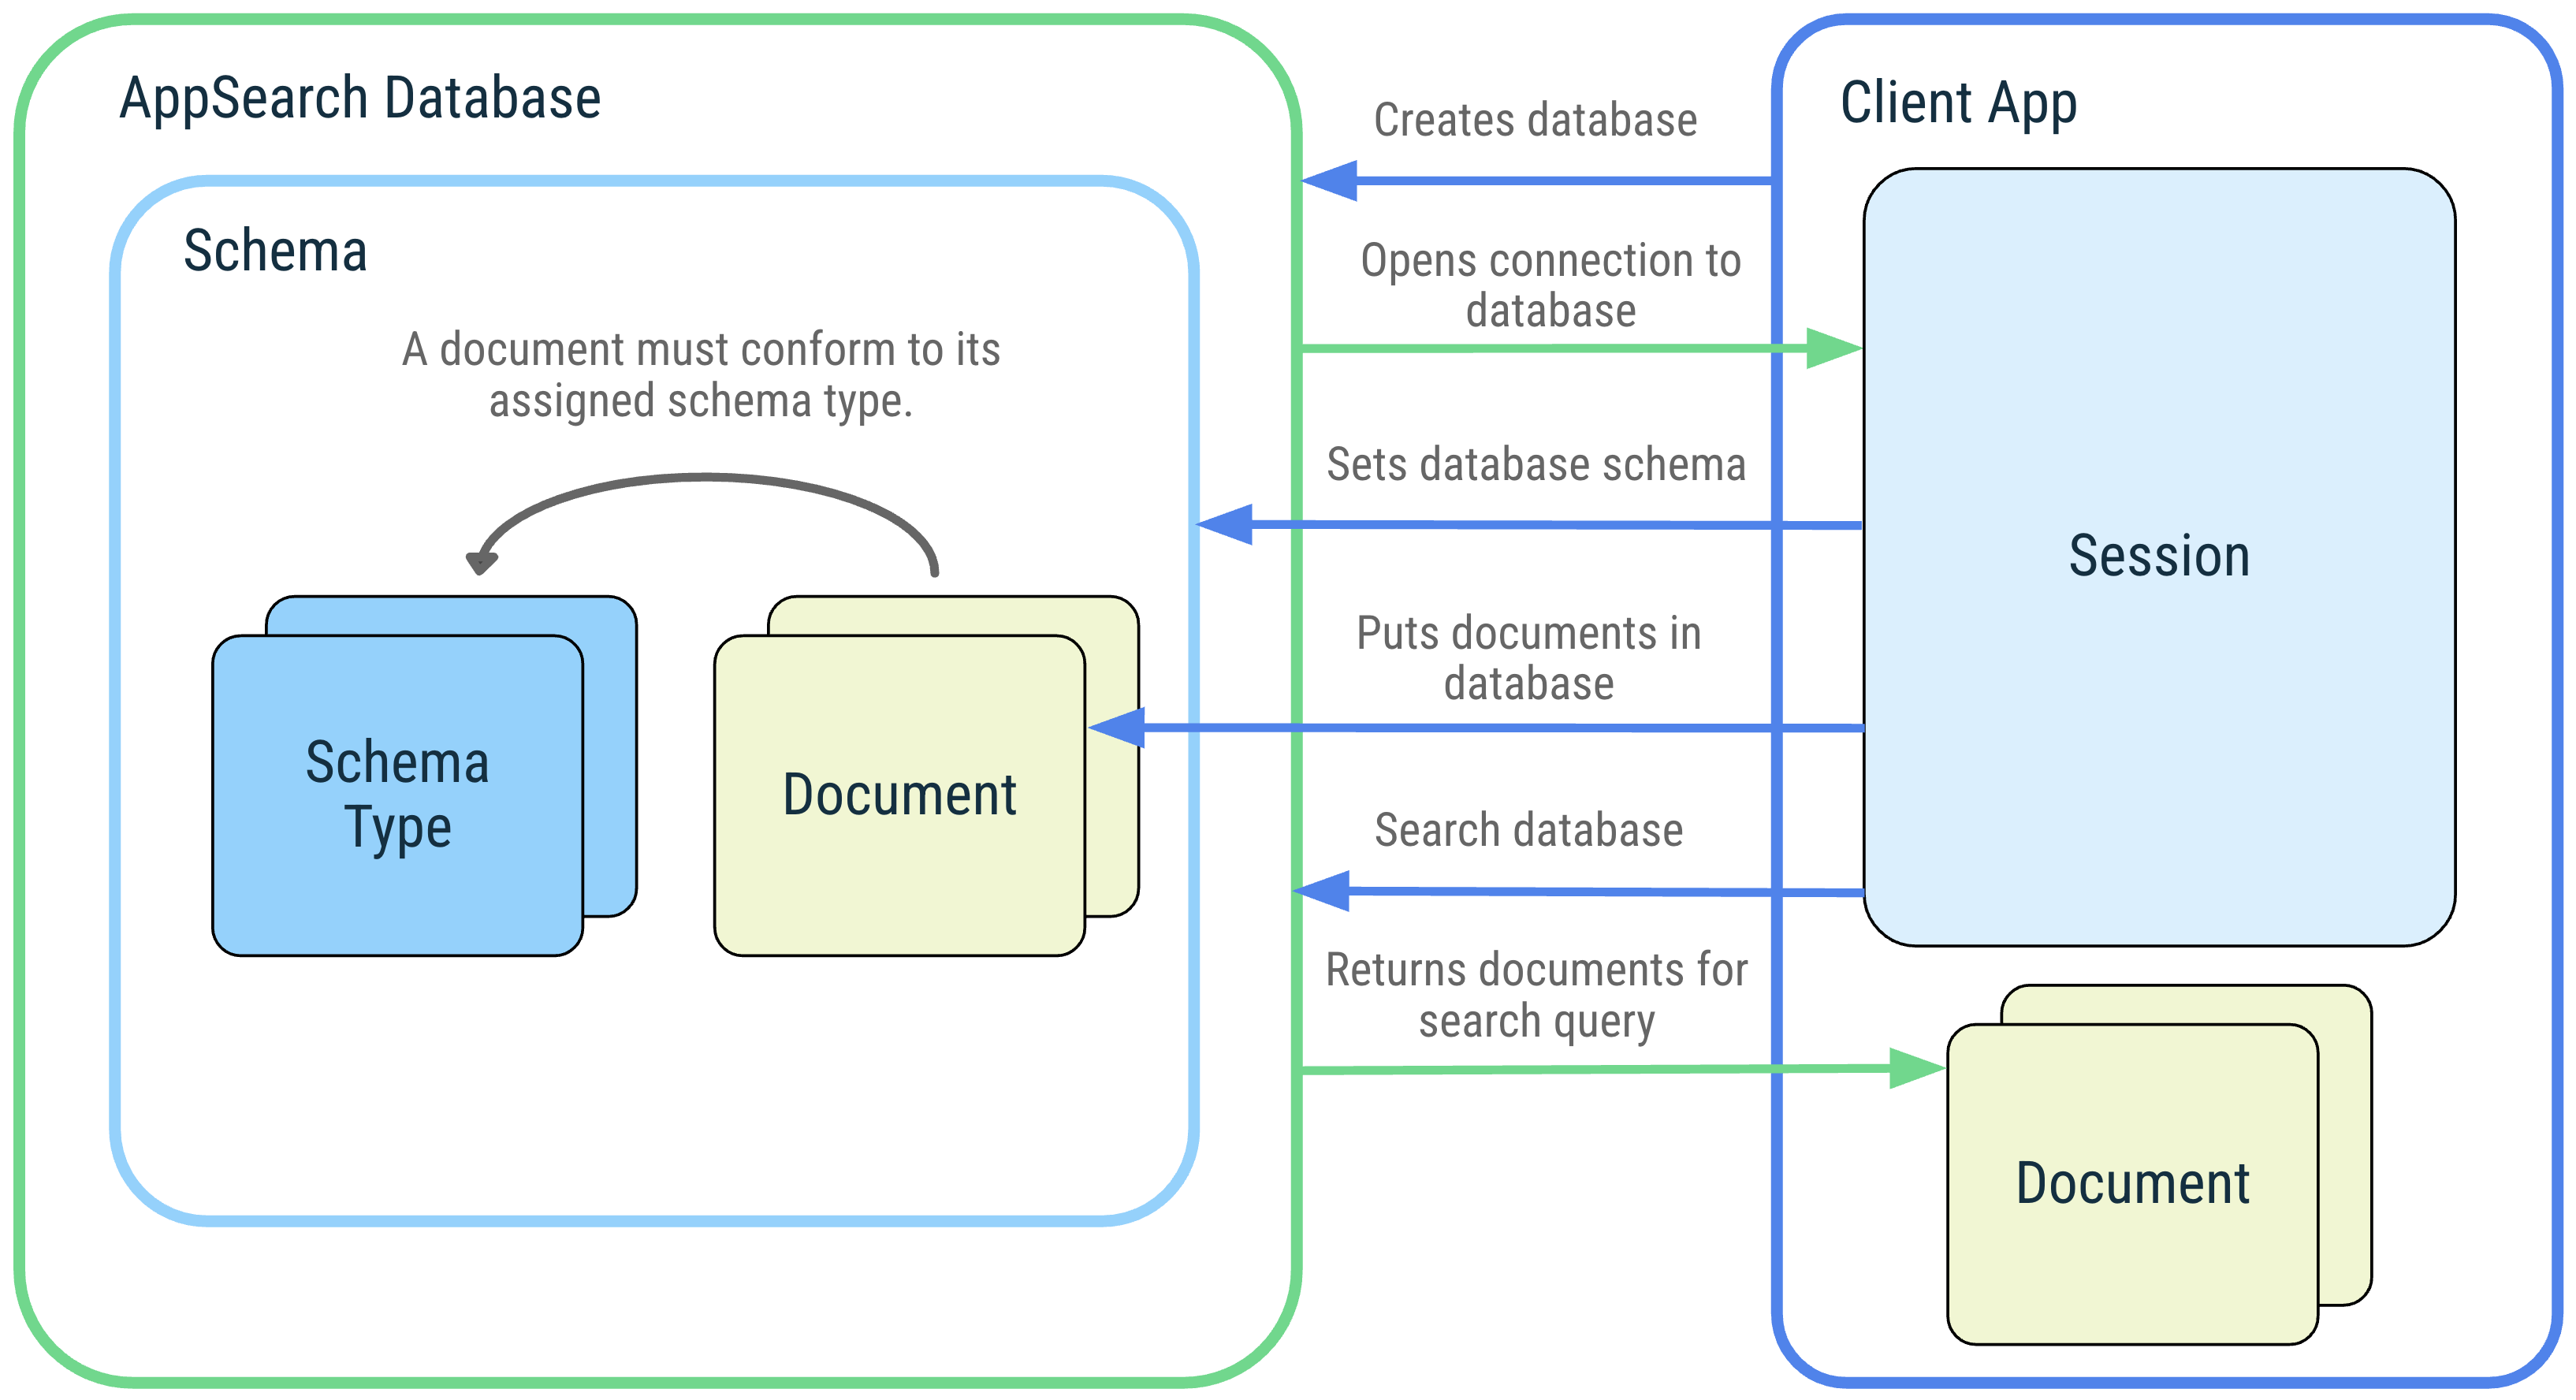 Descripción del diagrama de una aplicación cliente y sus interacciones con los siguientes conceptos de AppSearch: base de datos de AppSearch, esquema, tipos de esquema, documentos, sesión y búsqueda.